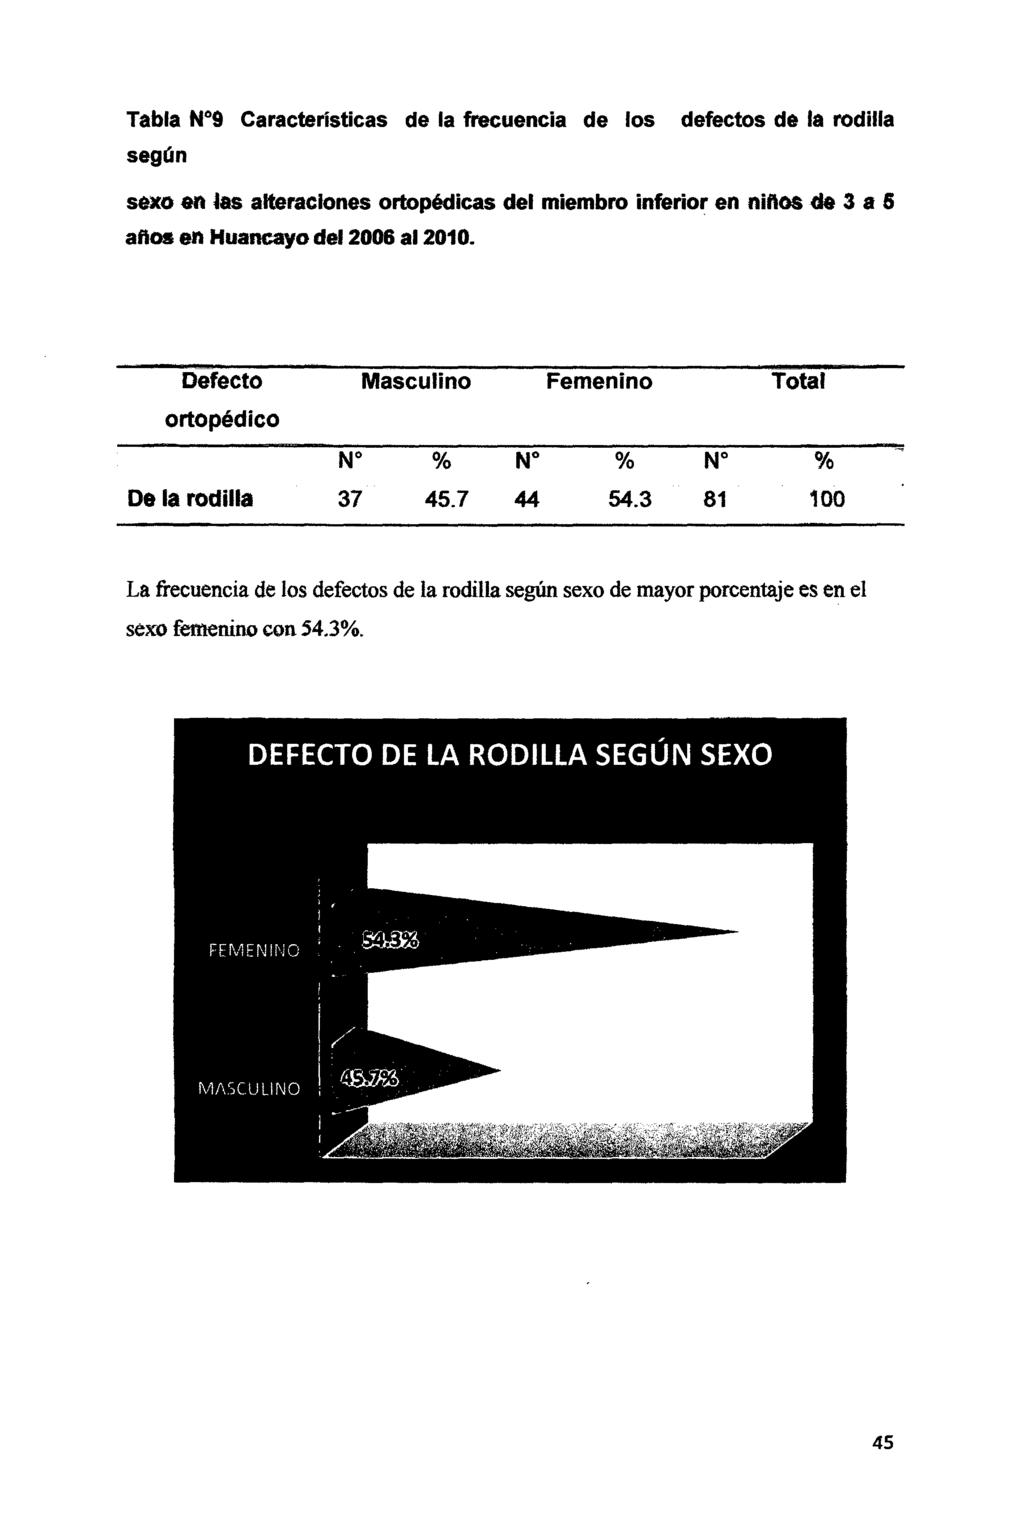 Tabla N 9 Características de la frecuencia de los según defectos de la rodilla sexo en ~as alteraciones ortopédicas del miembro inferior en niftos de 3 a 5 aftas en Huancayo del 2008 al 2010.